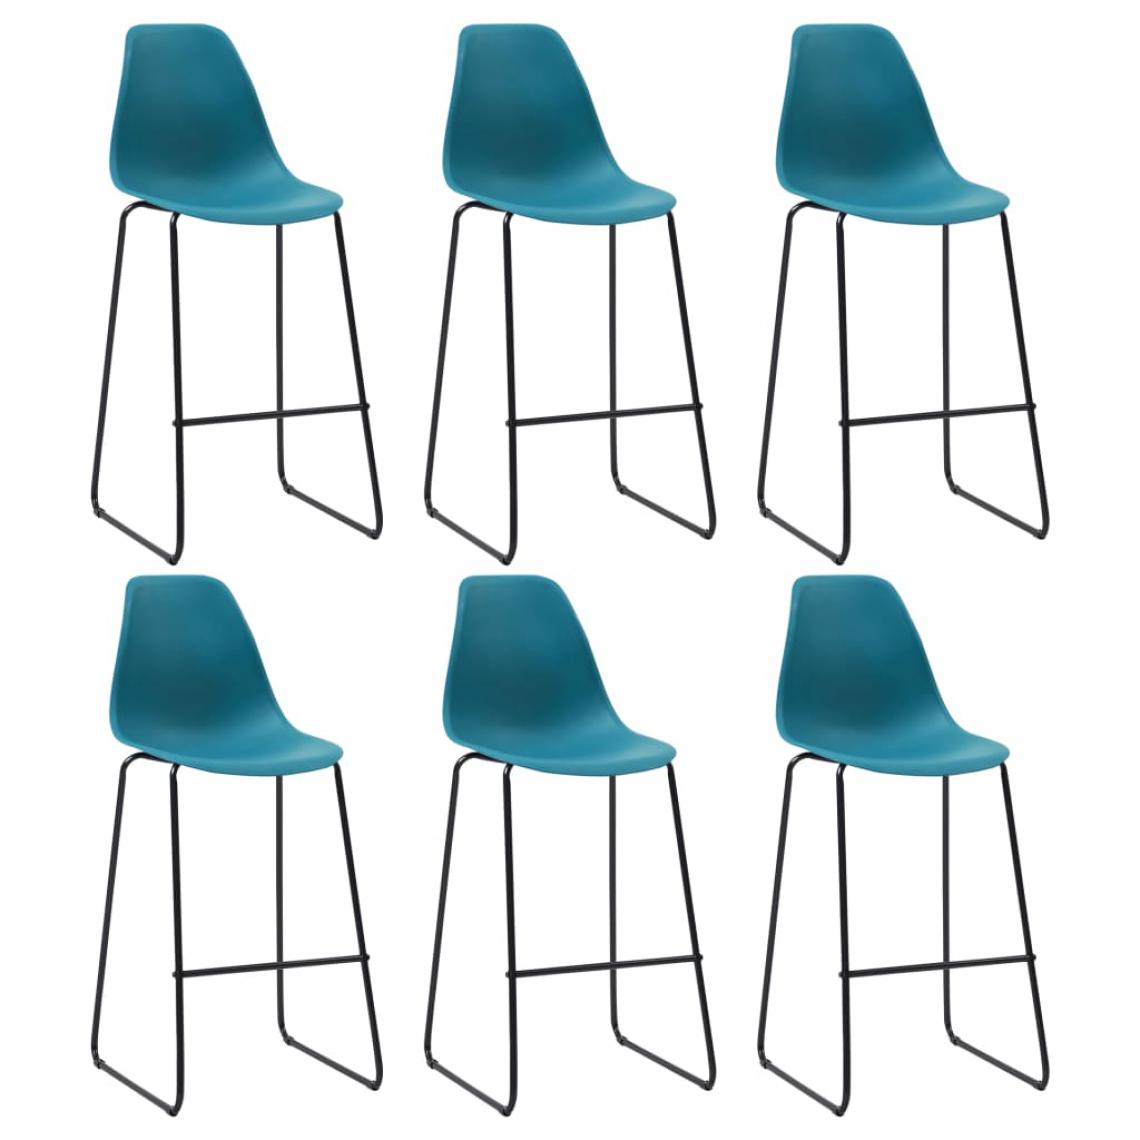 Icaverne - Esthetique Fauteuils et chaises reference Lusaka Chaises de bar 6 pcs Turquoise Plastique - Tabourets